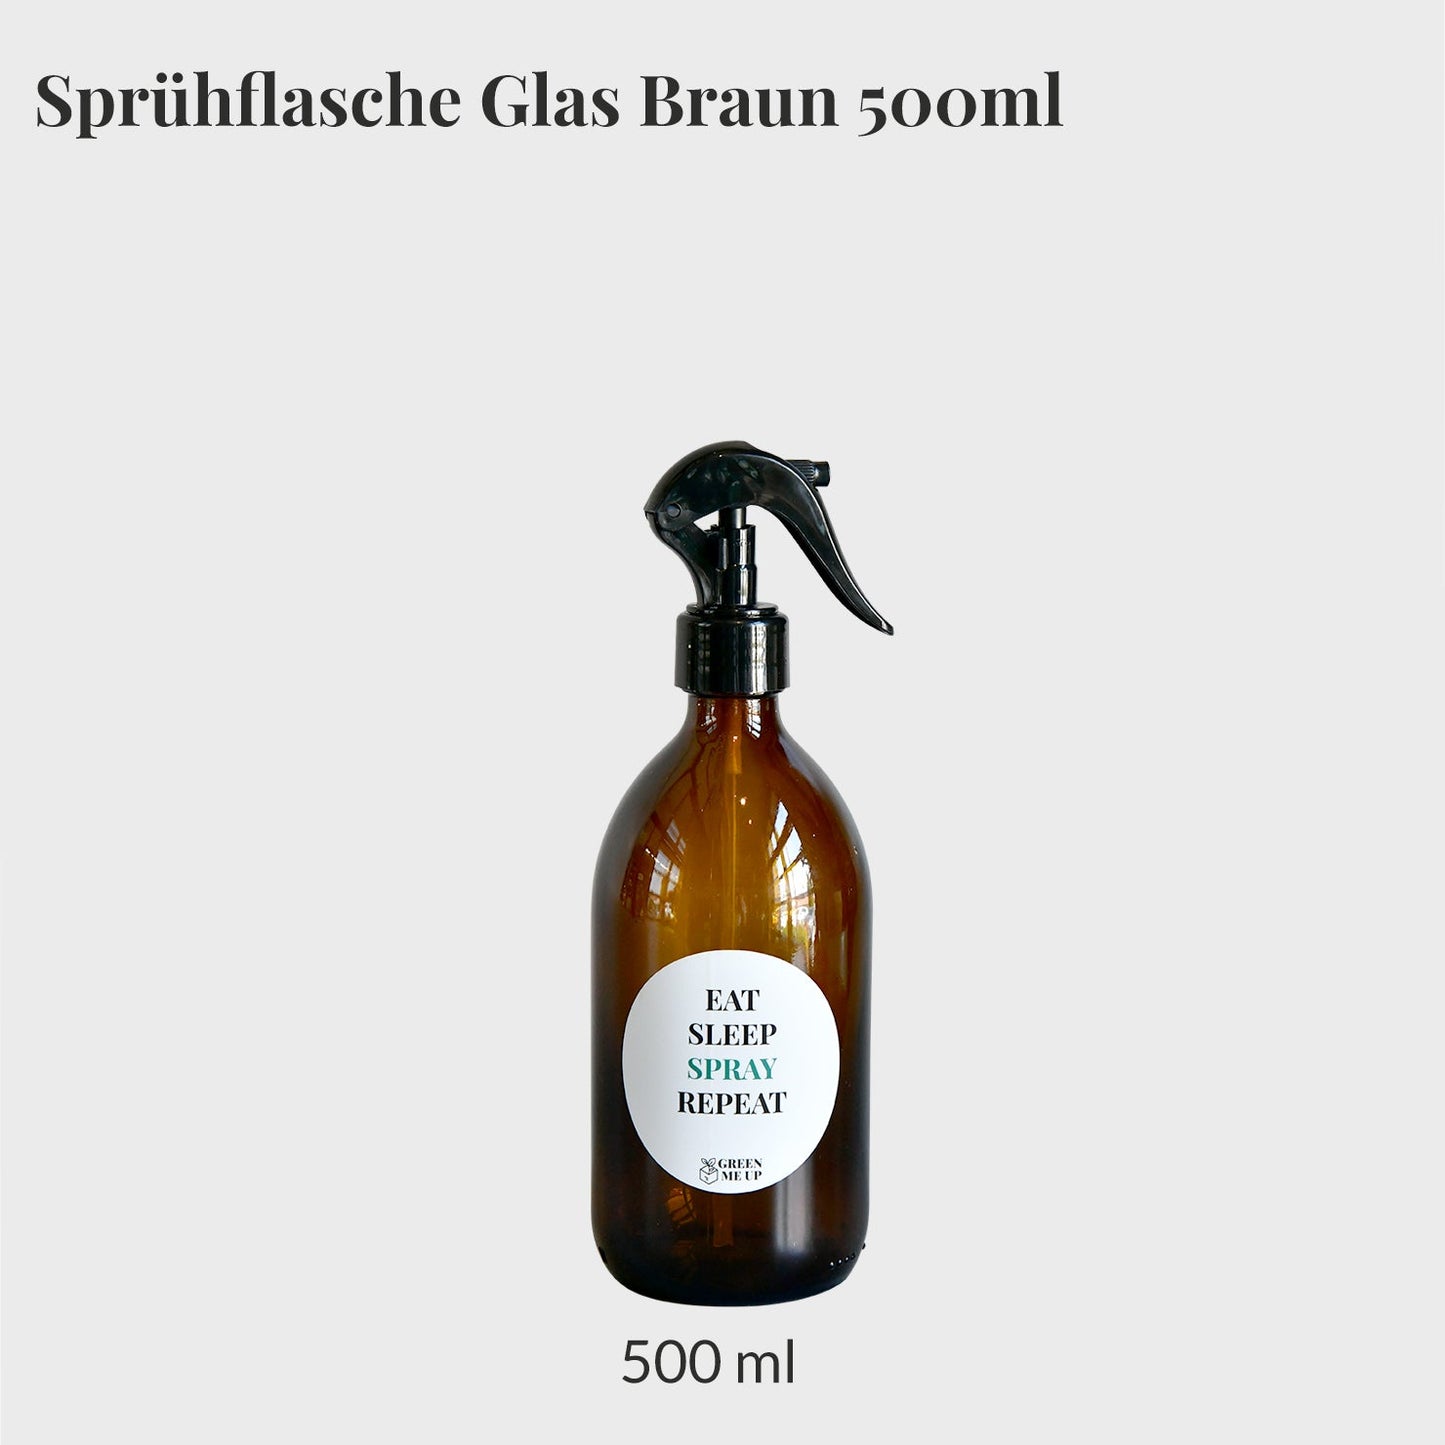 GRATIS Sprühflasche Glas Braun 500ml